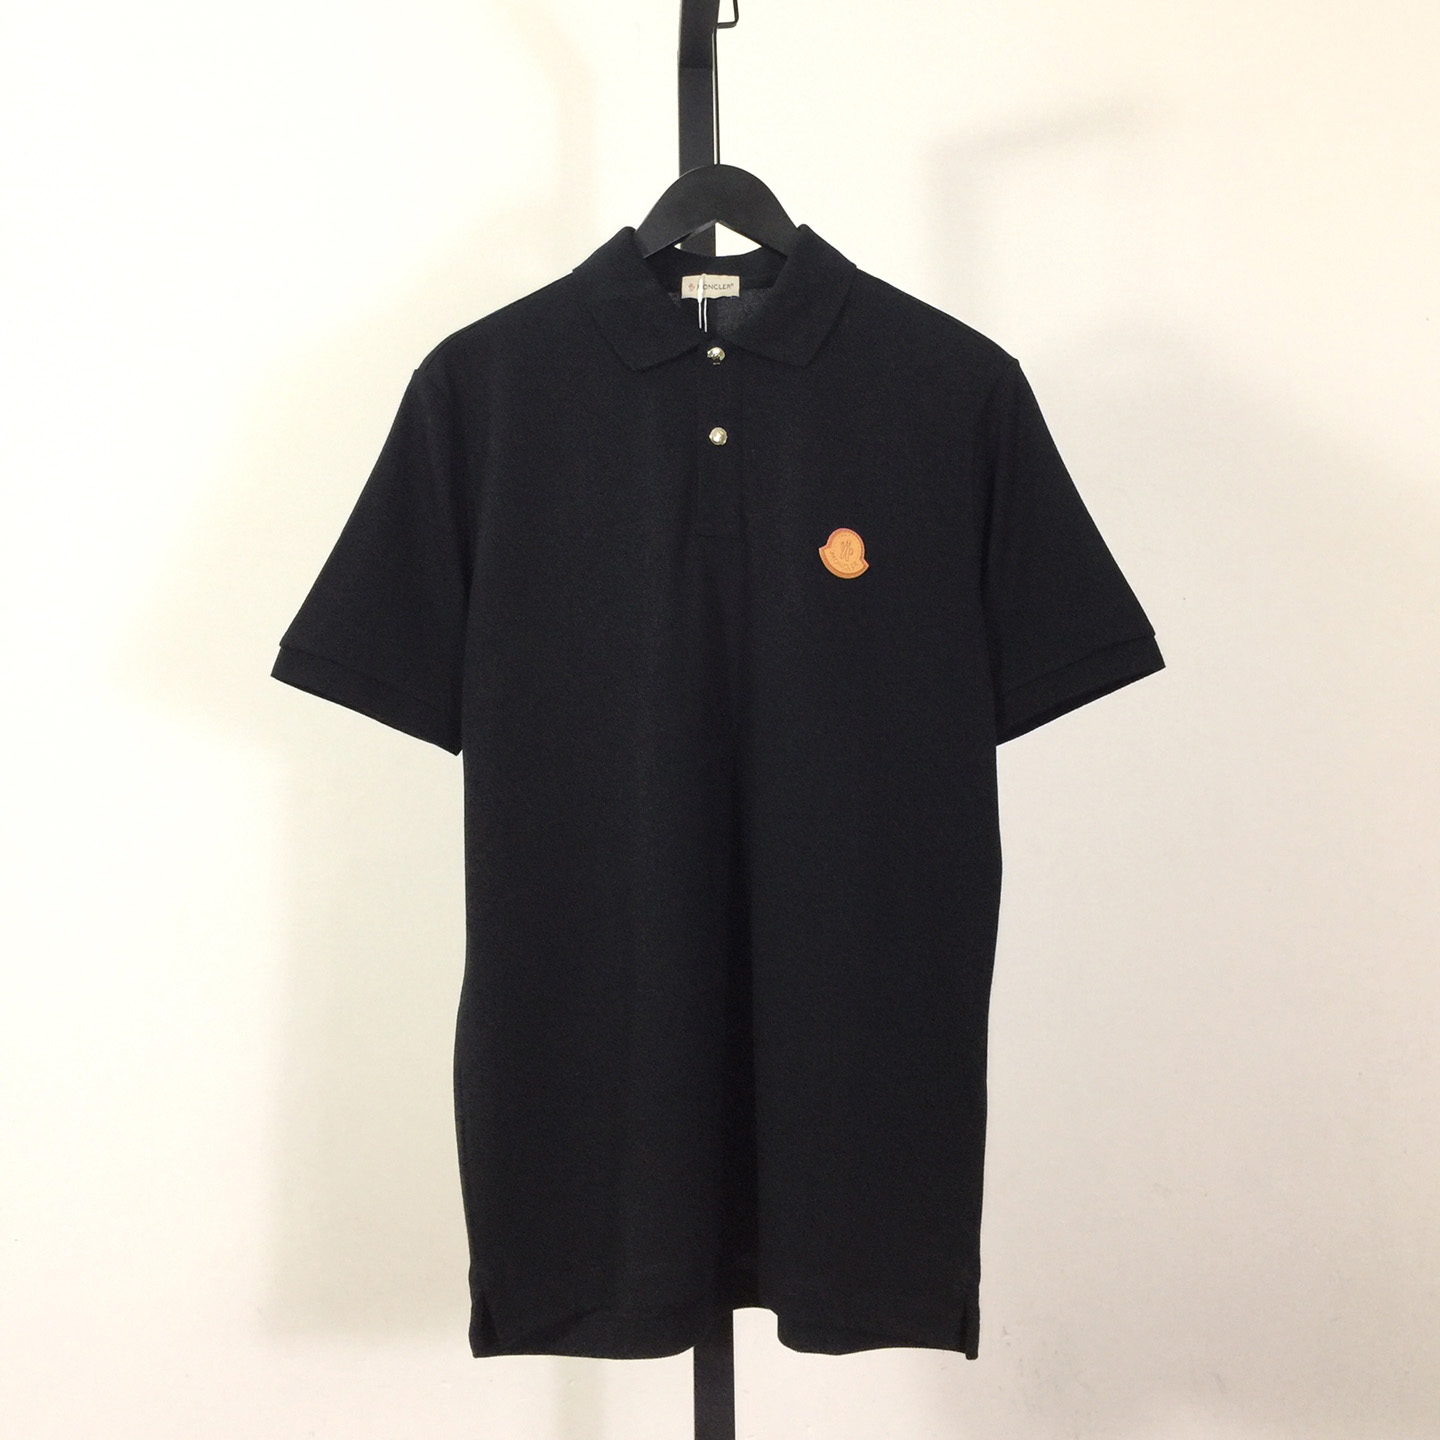 Moncler Logo Cotton Polo Shirt - everydesigner